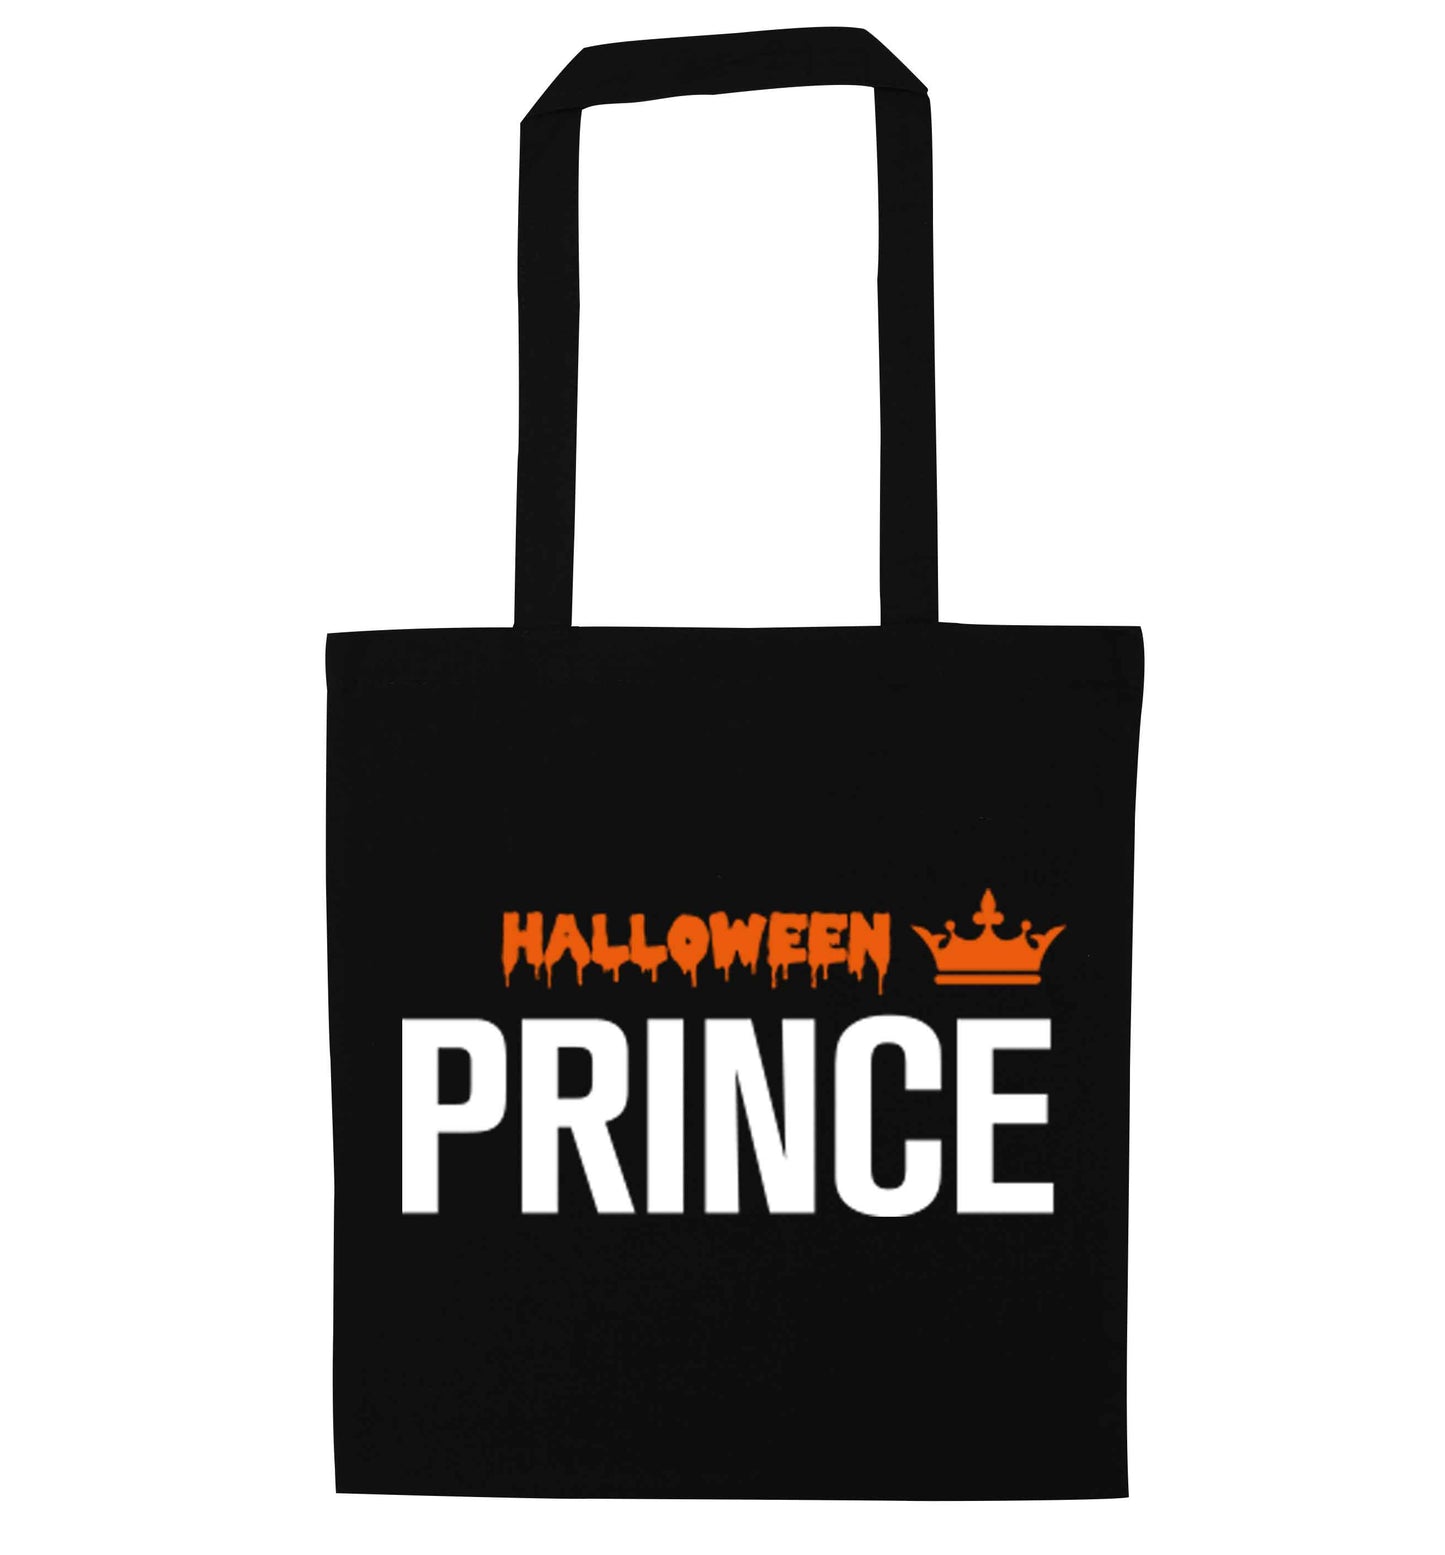 Halloween prince black tote bag